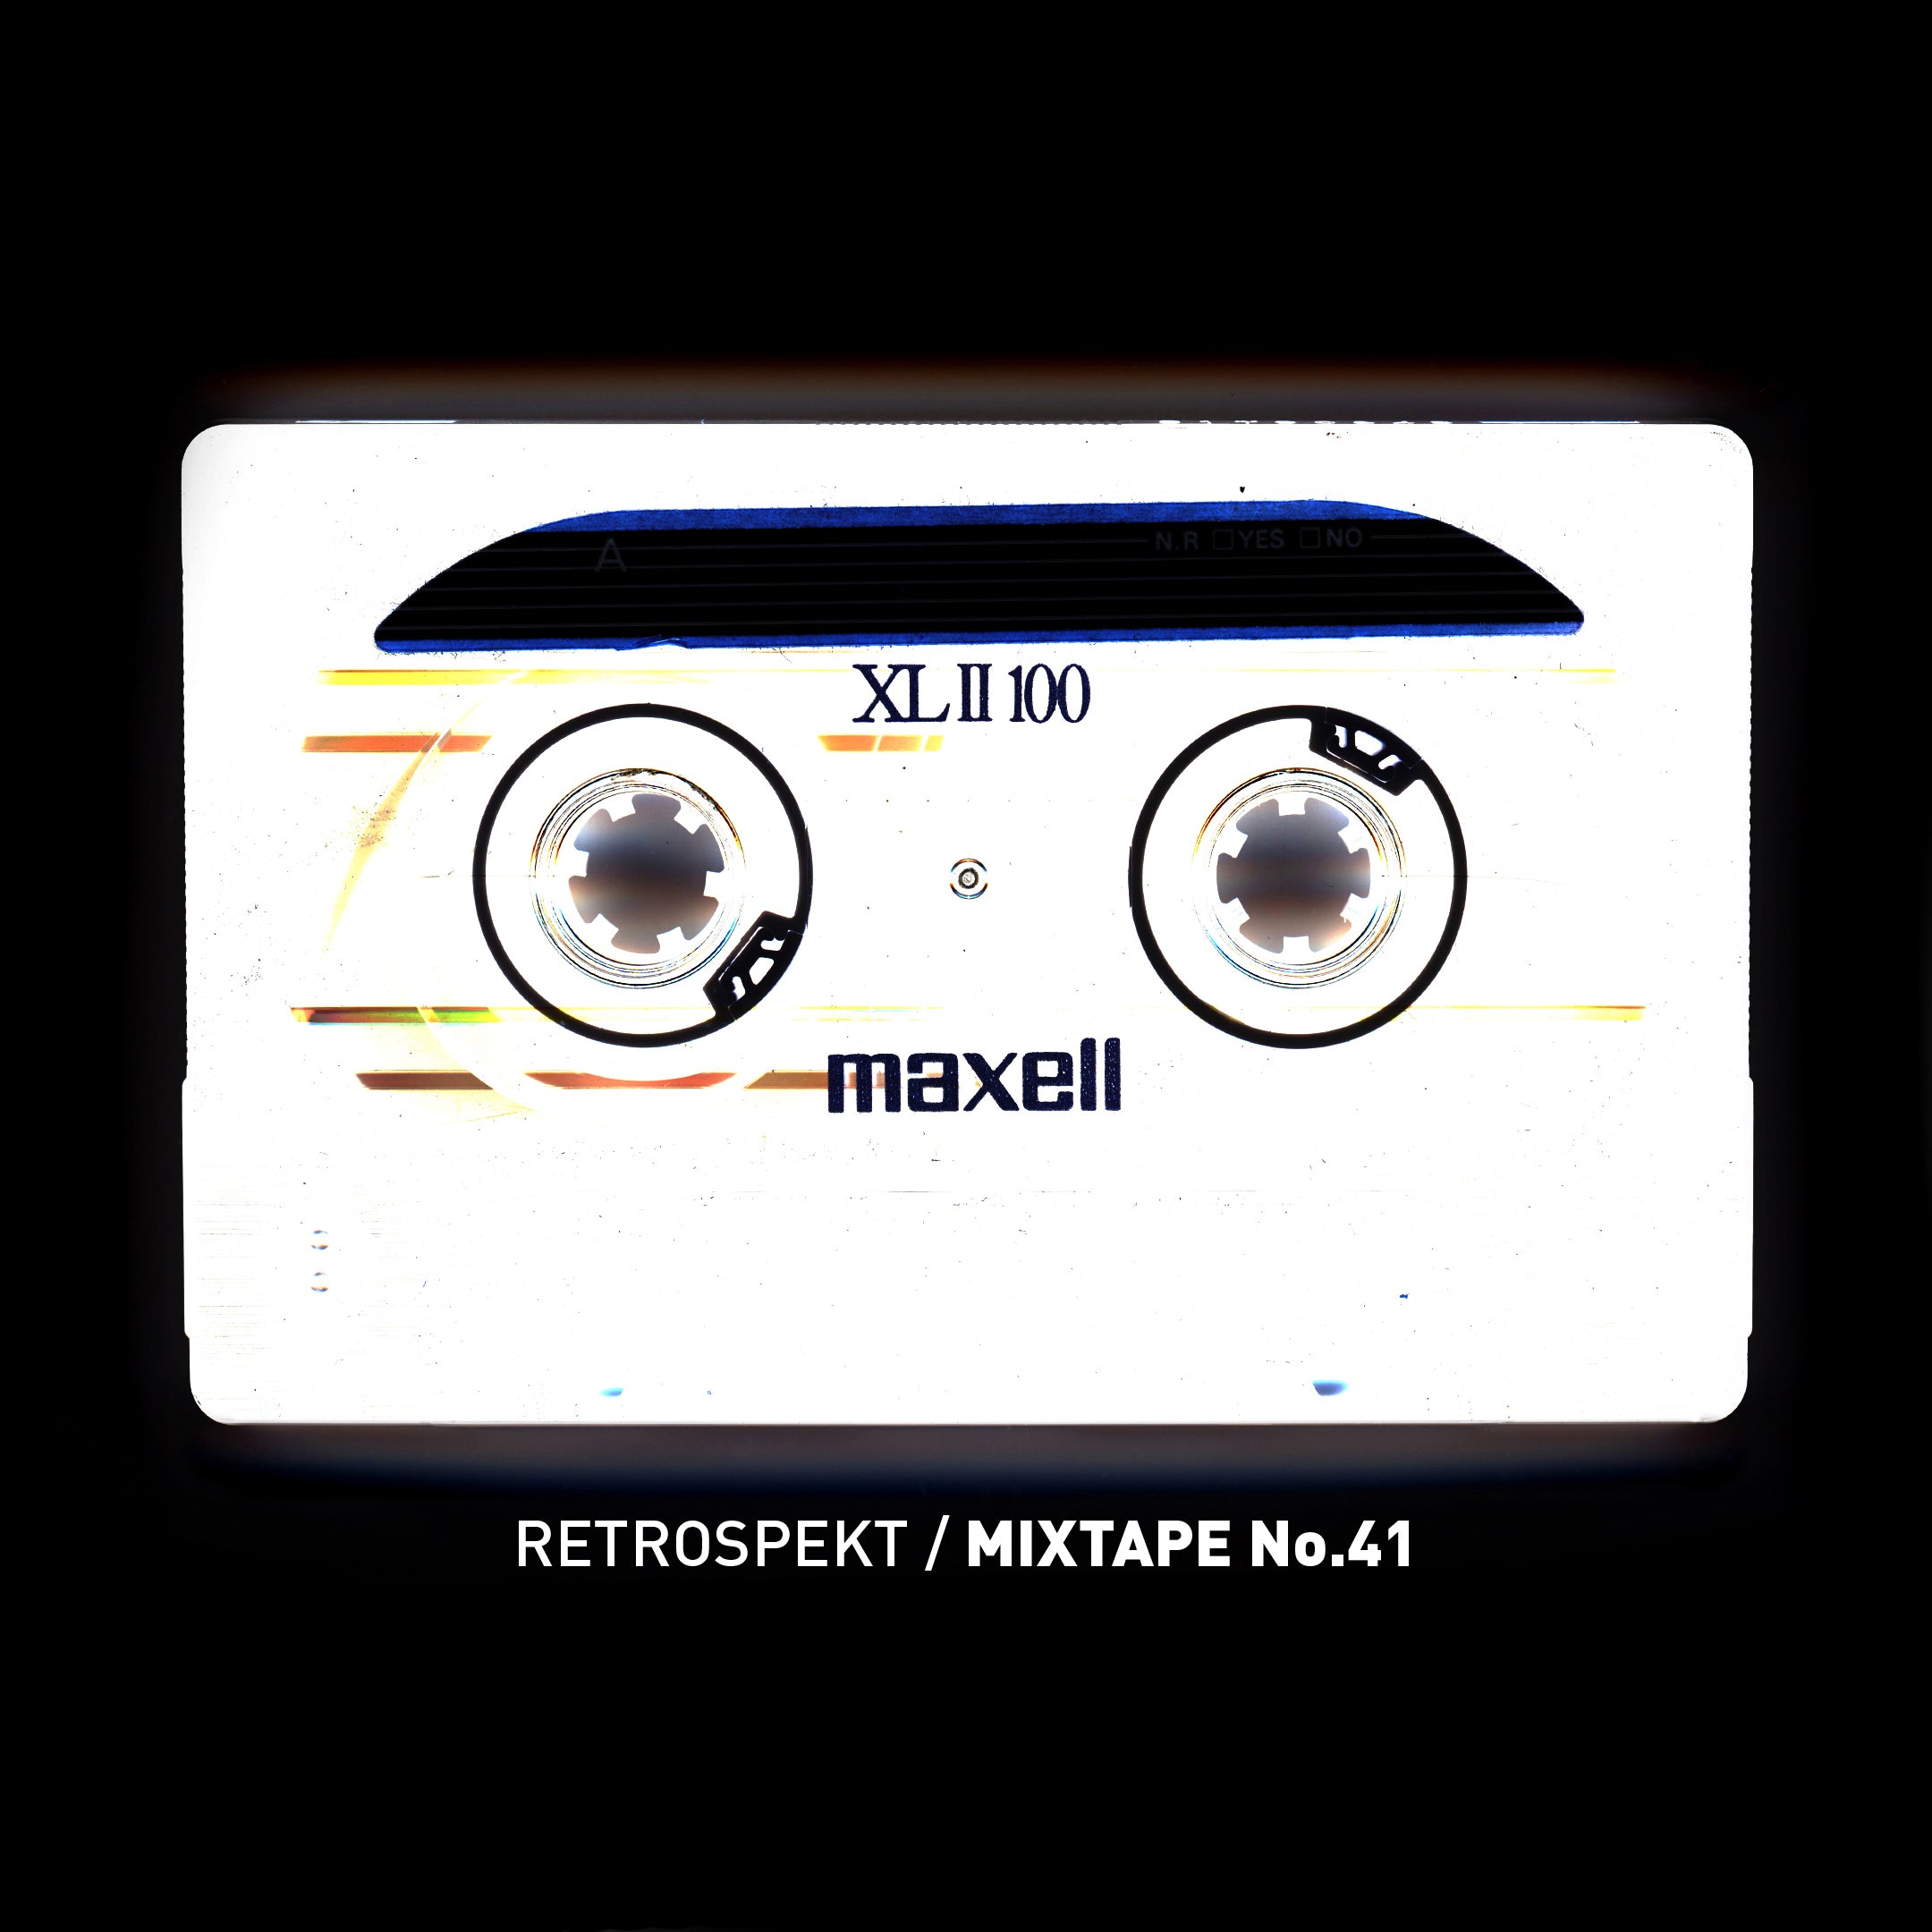 Mixtape 41